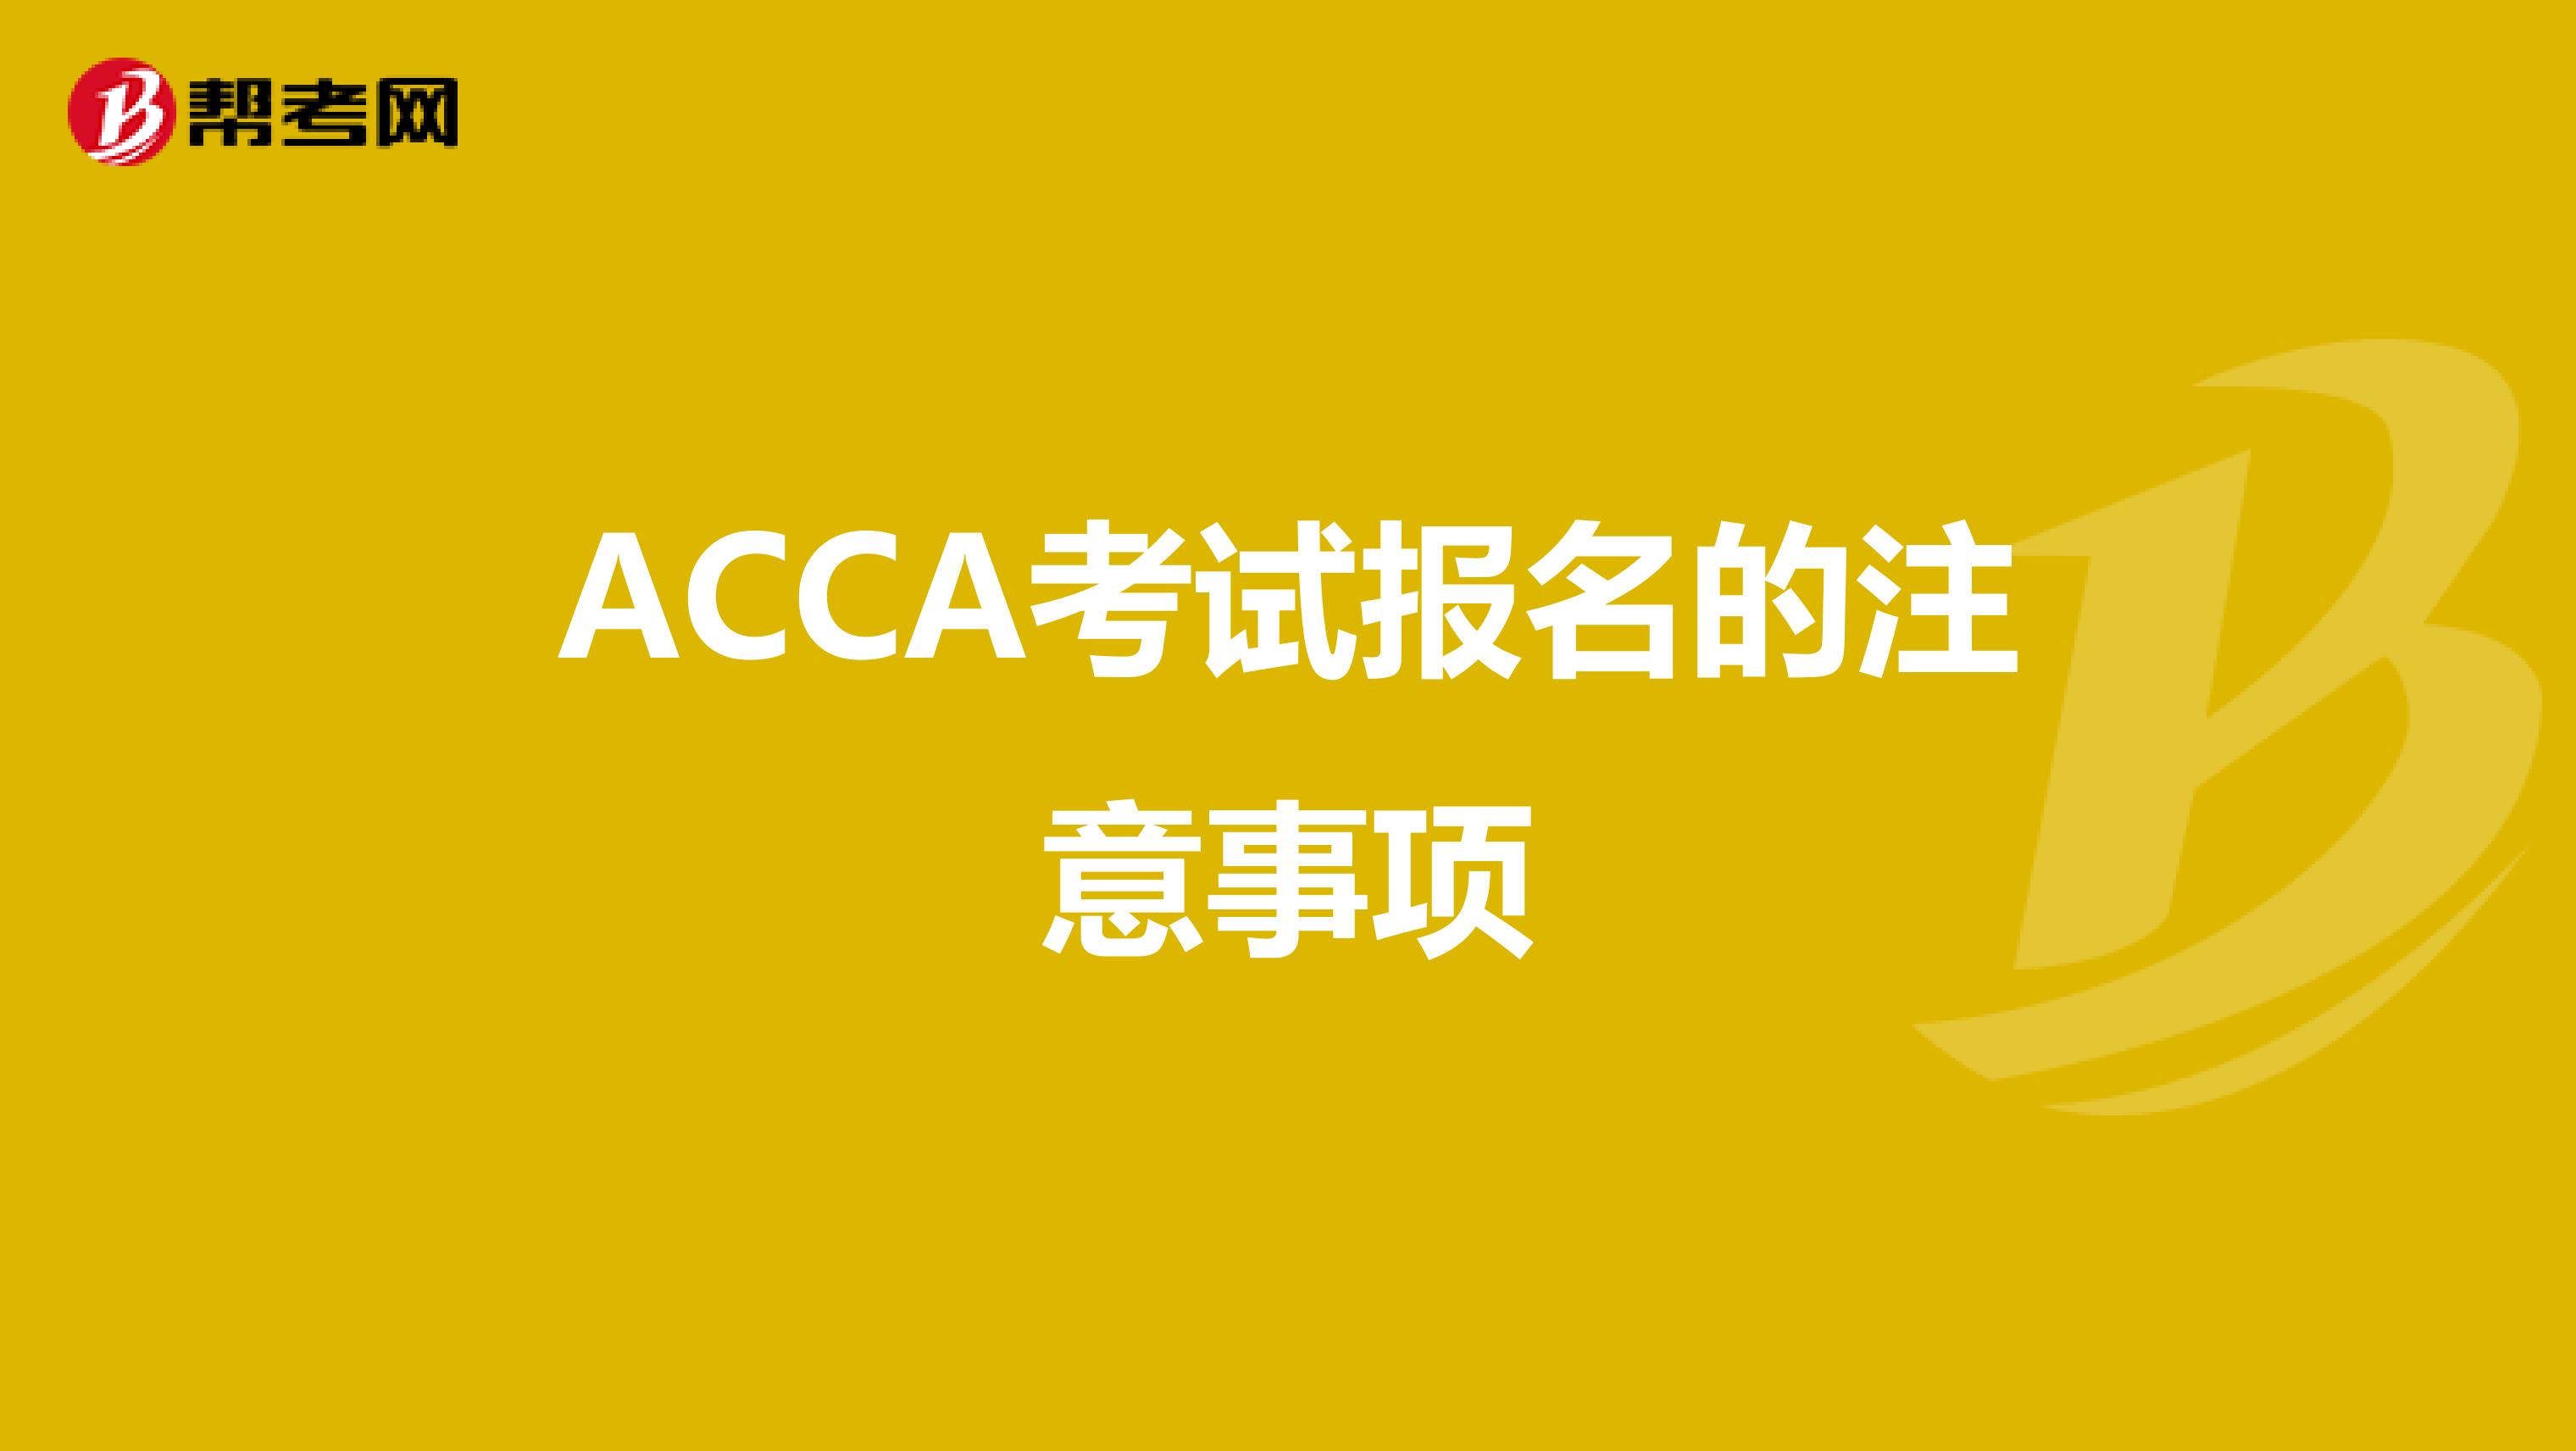 ACCA考试报名的注意事项